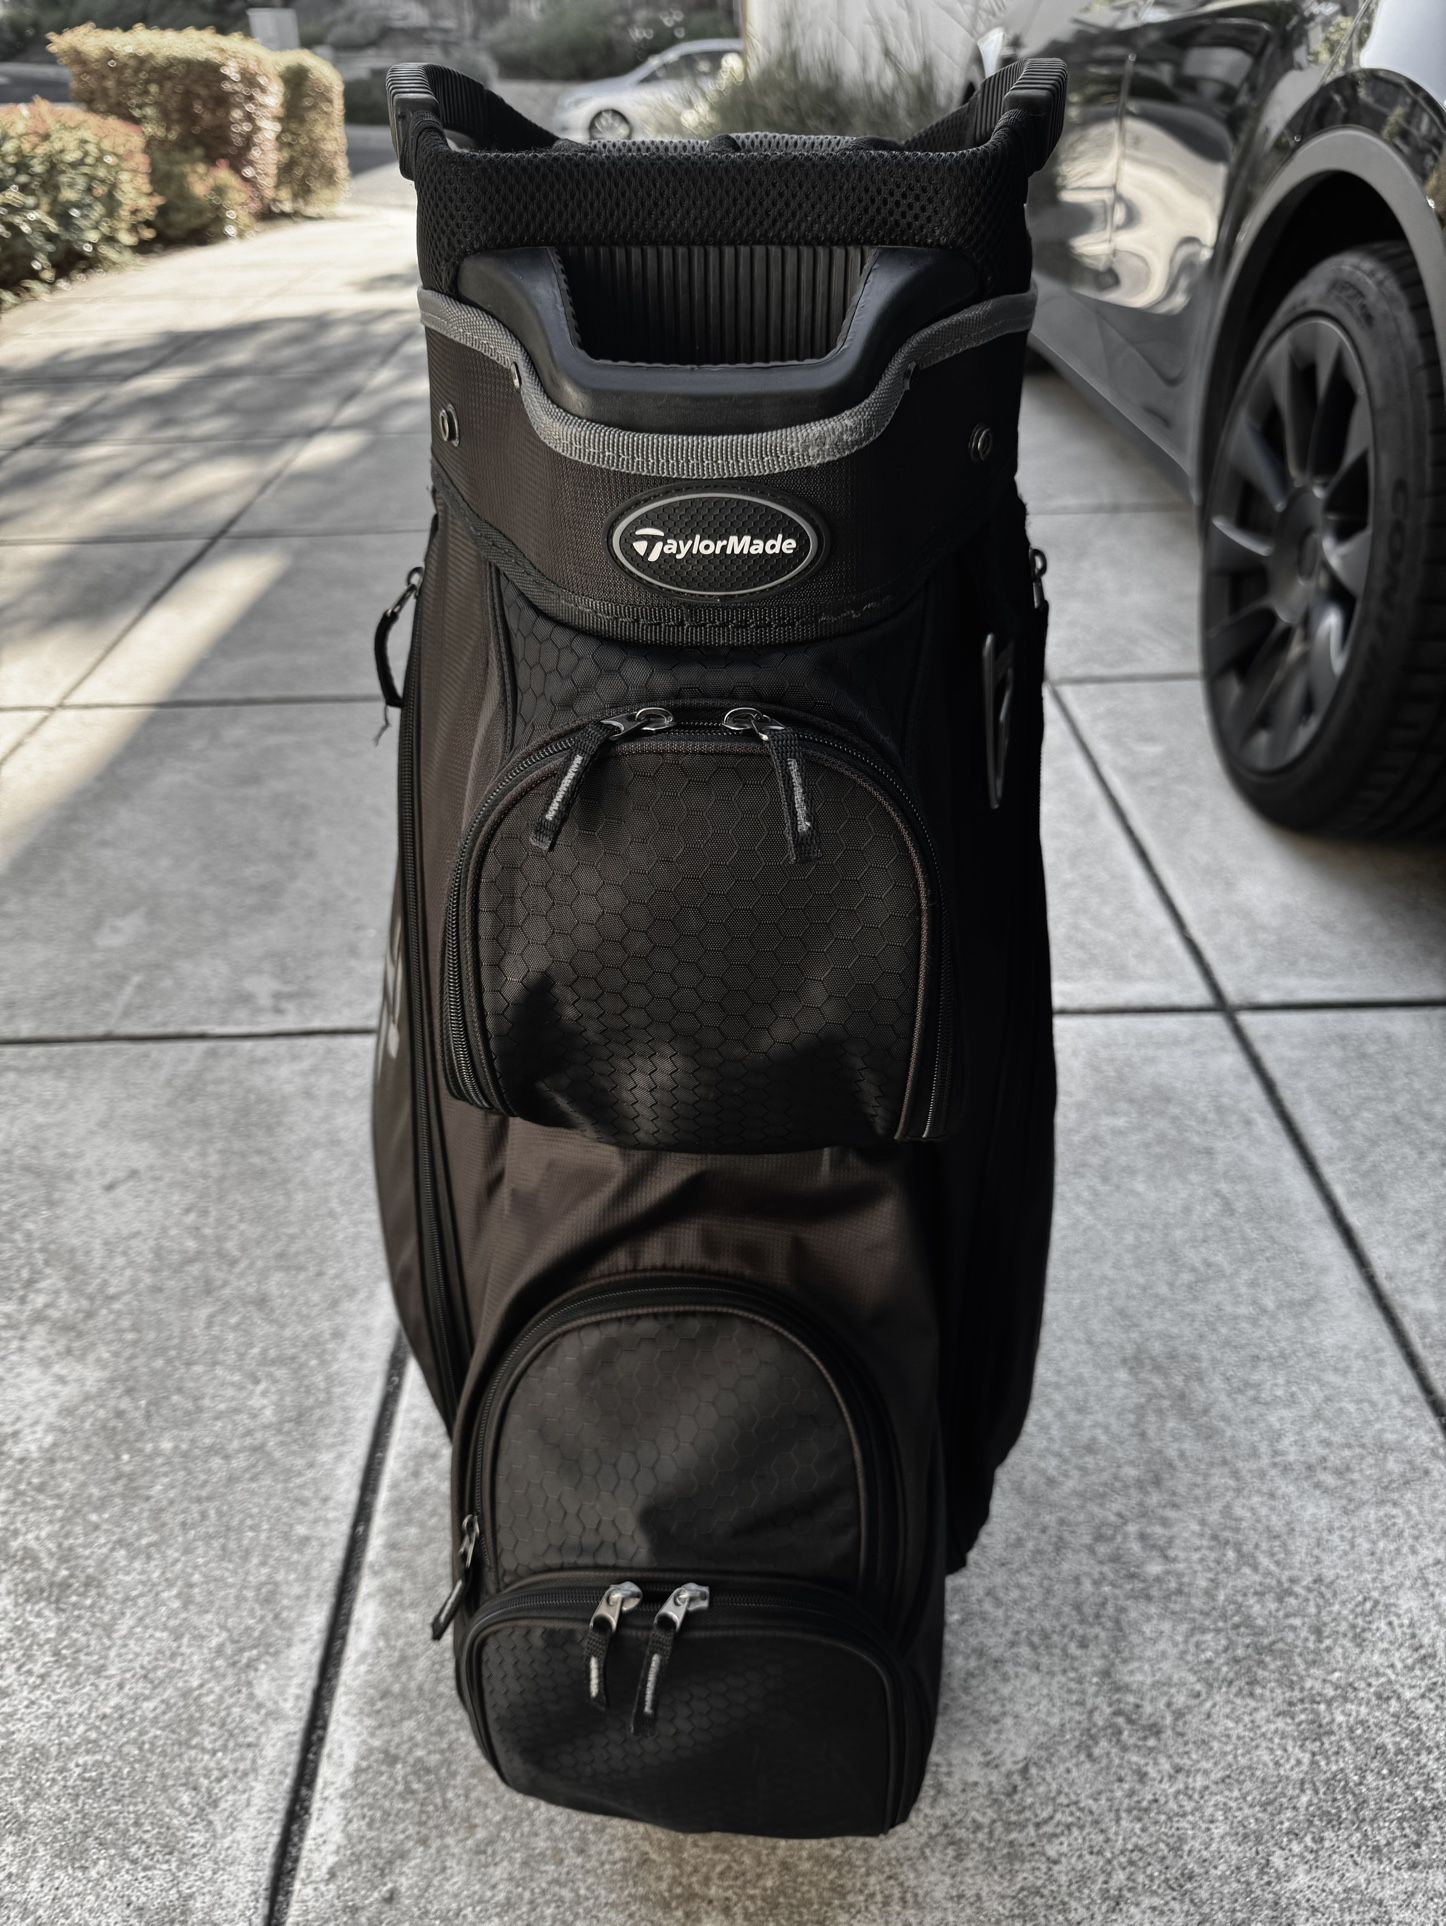 Taylormade Cart Golf Bag